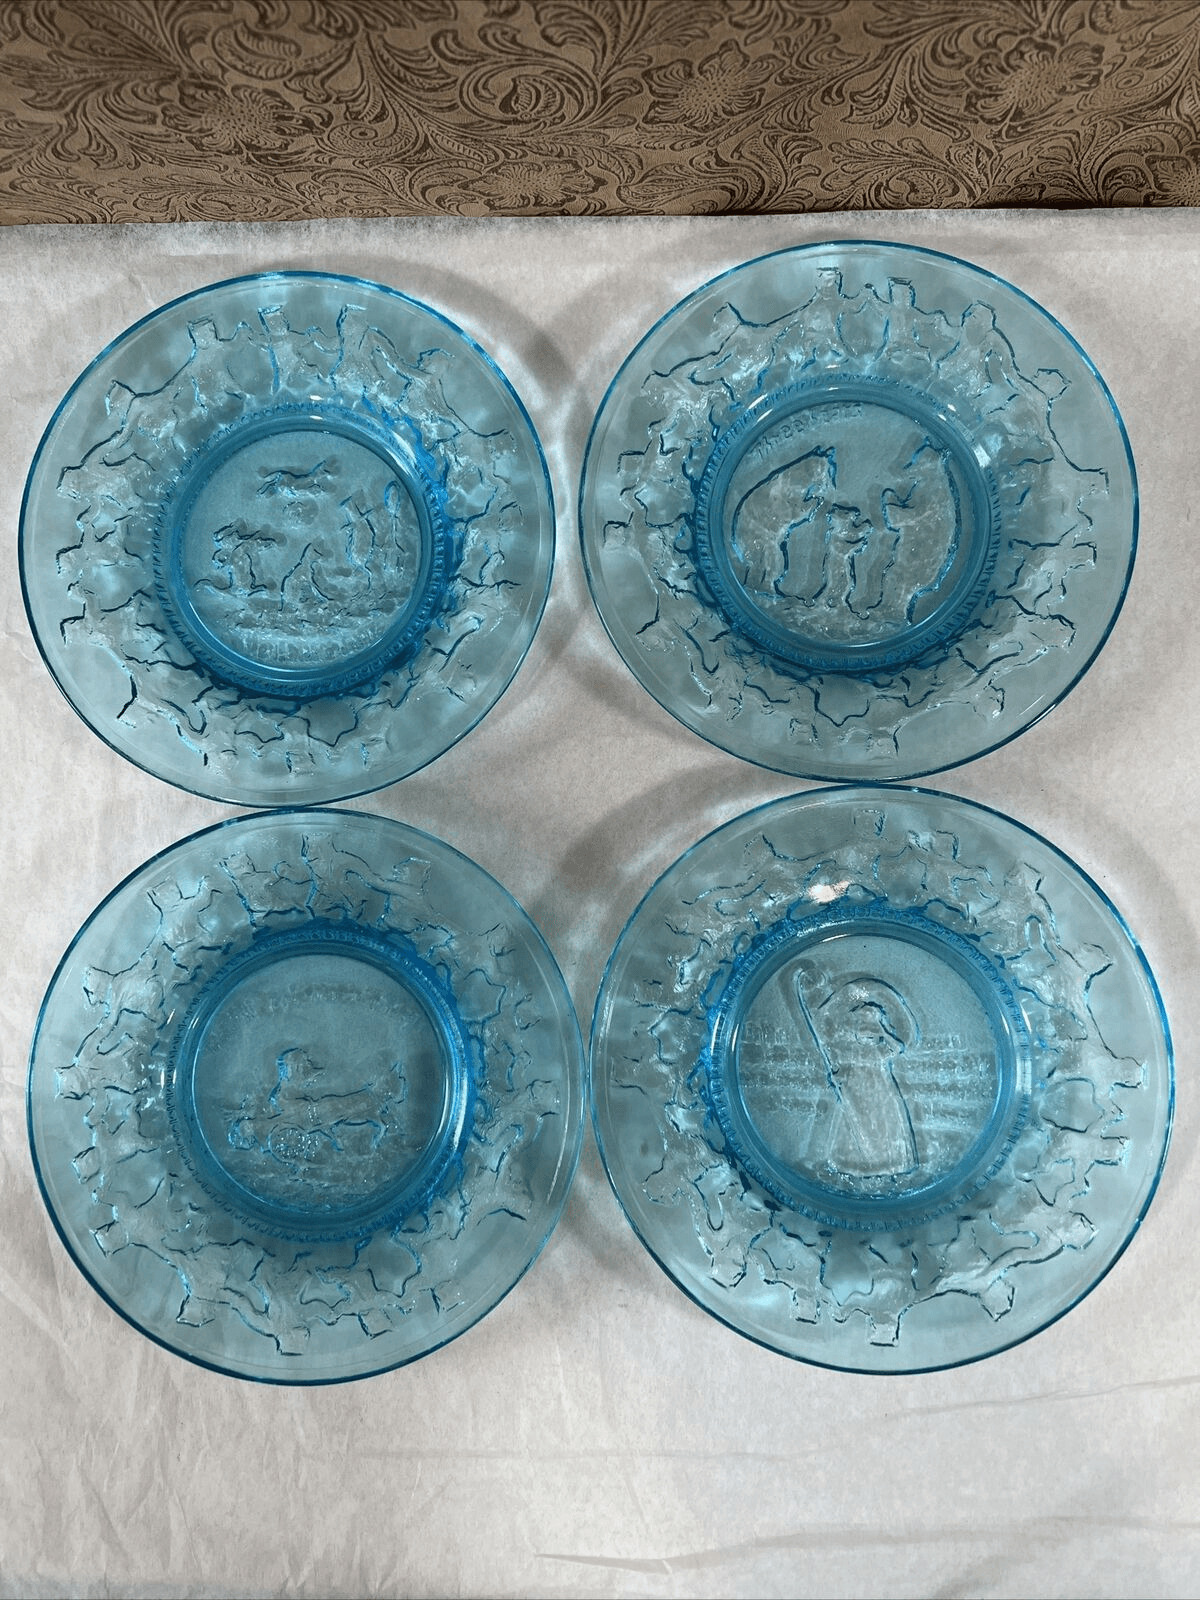 Vintage Tiara Glass Chili’s Nursery Rhyme Plates Blue Three Bears Little Bo Peep